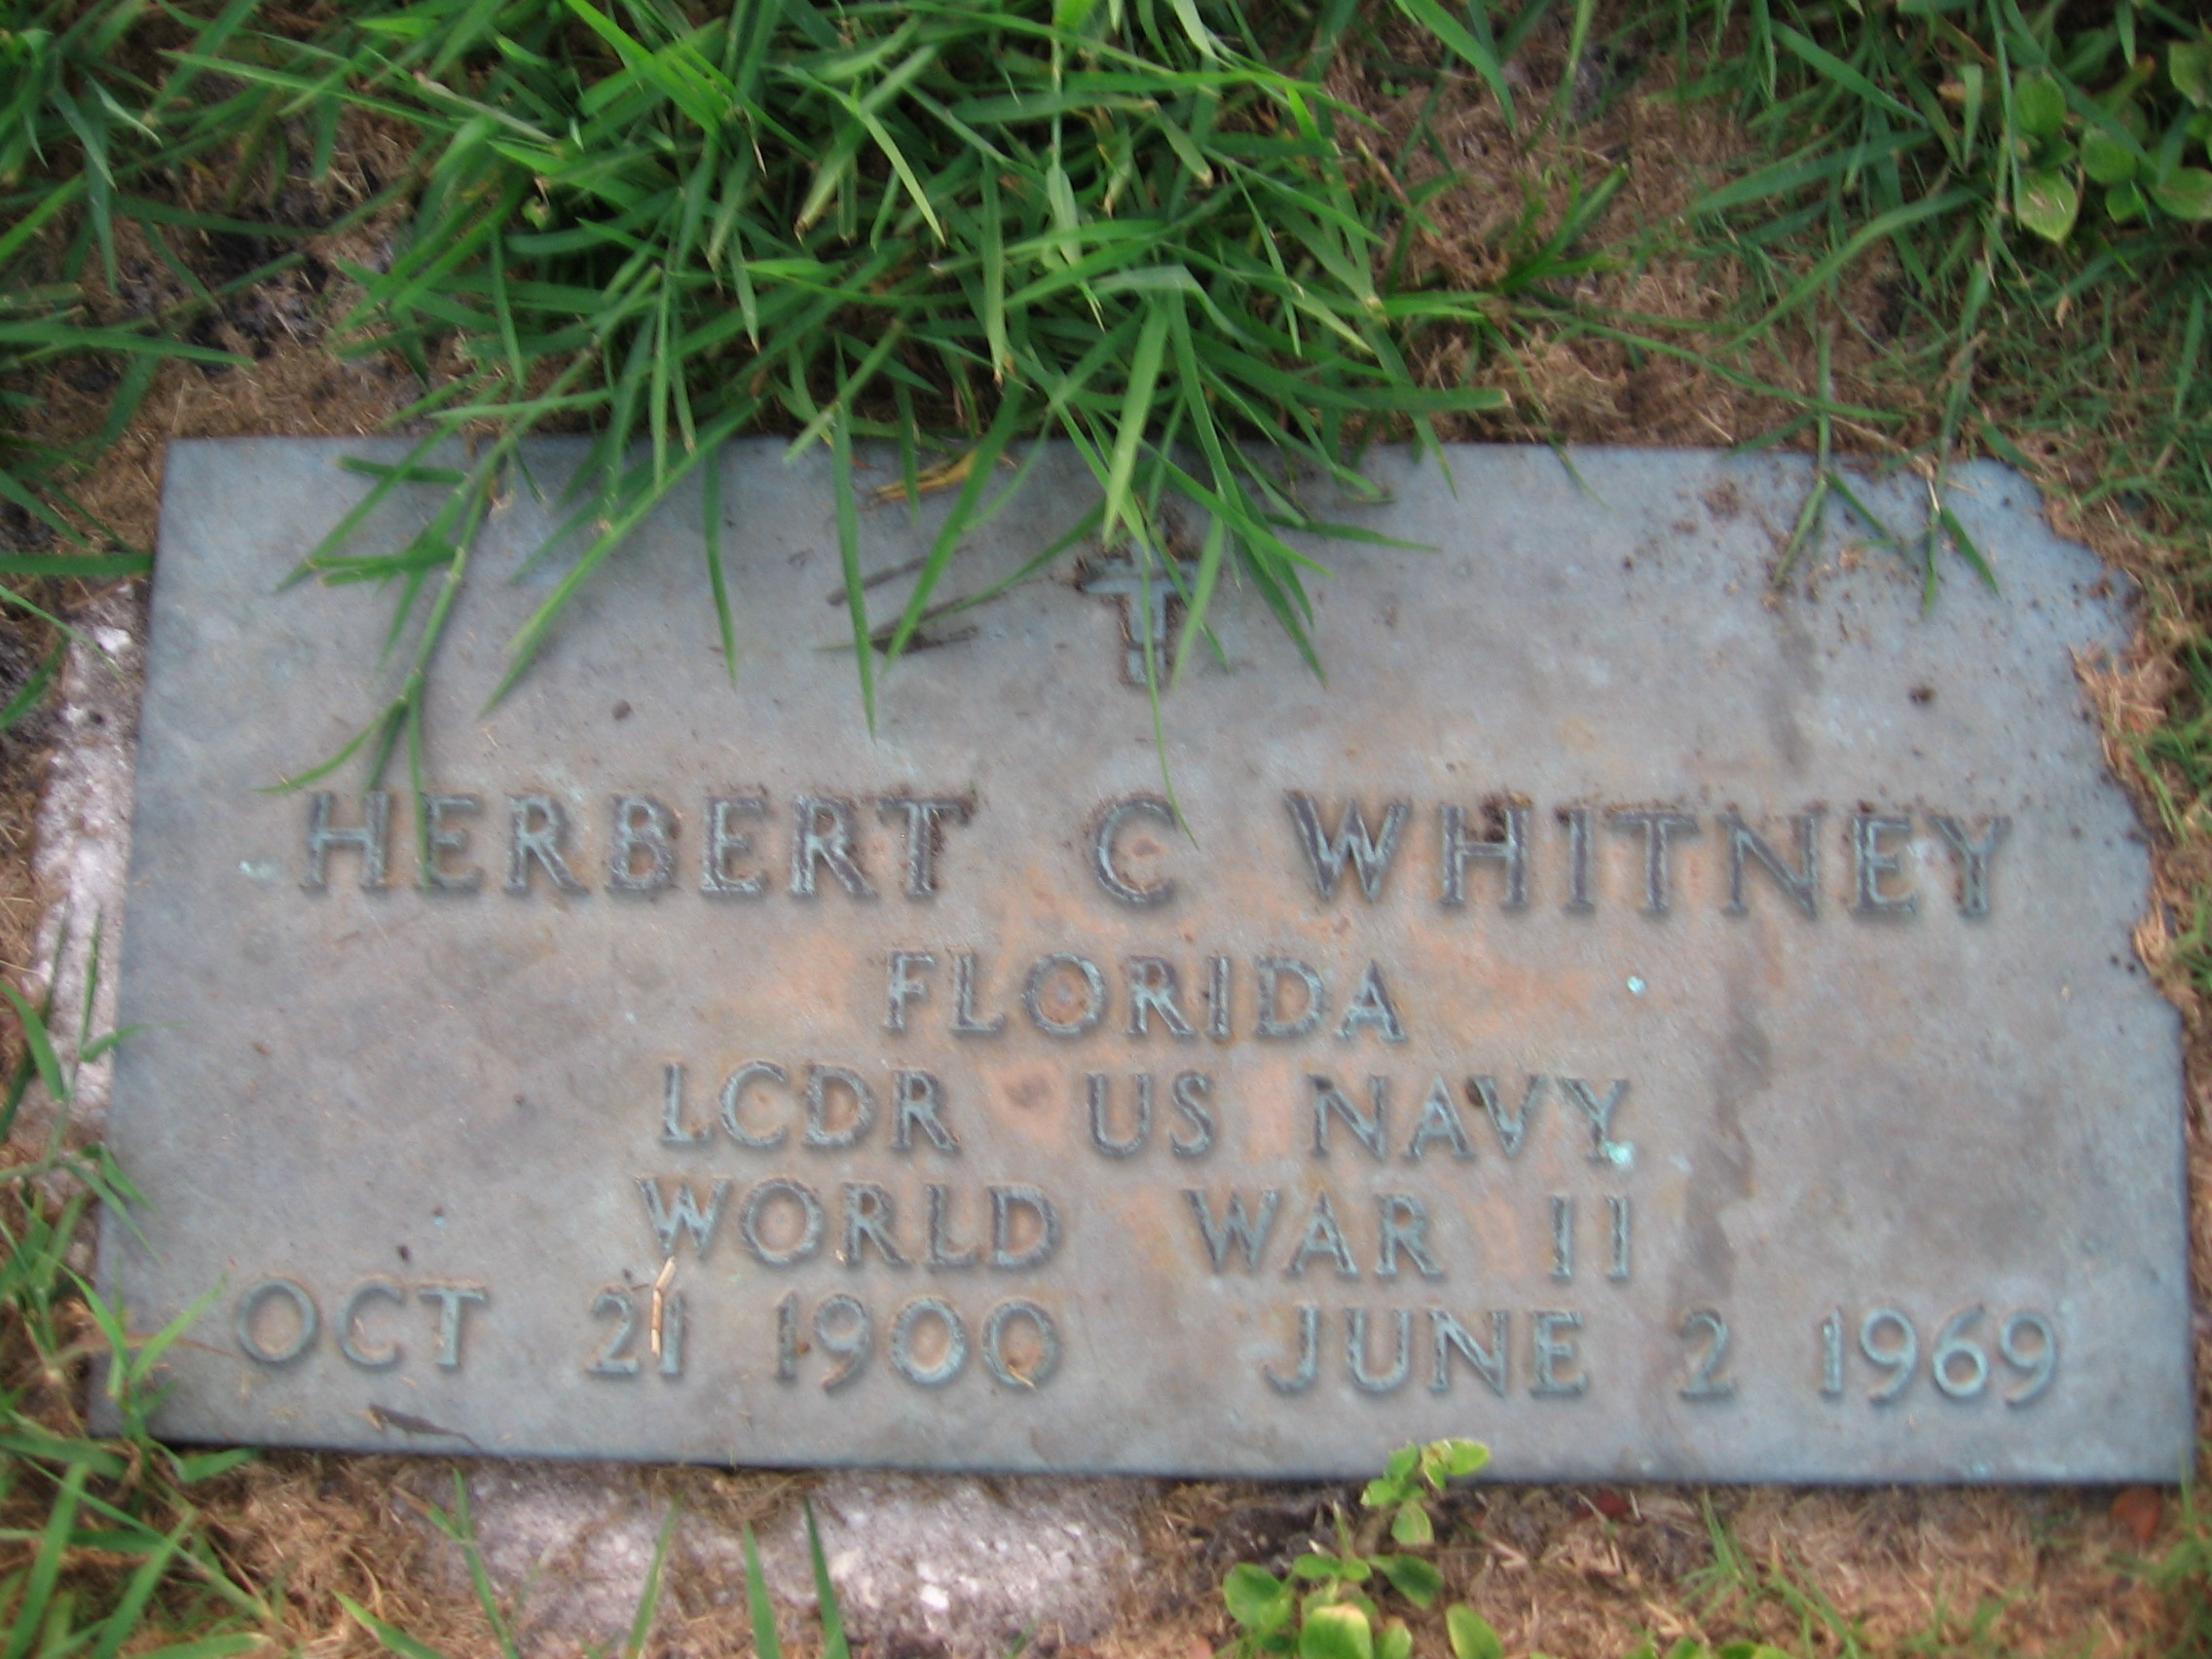 LCDR Herbert C Whitney